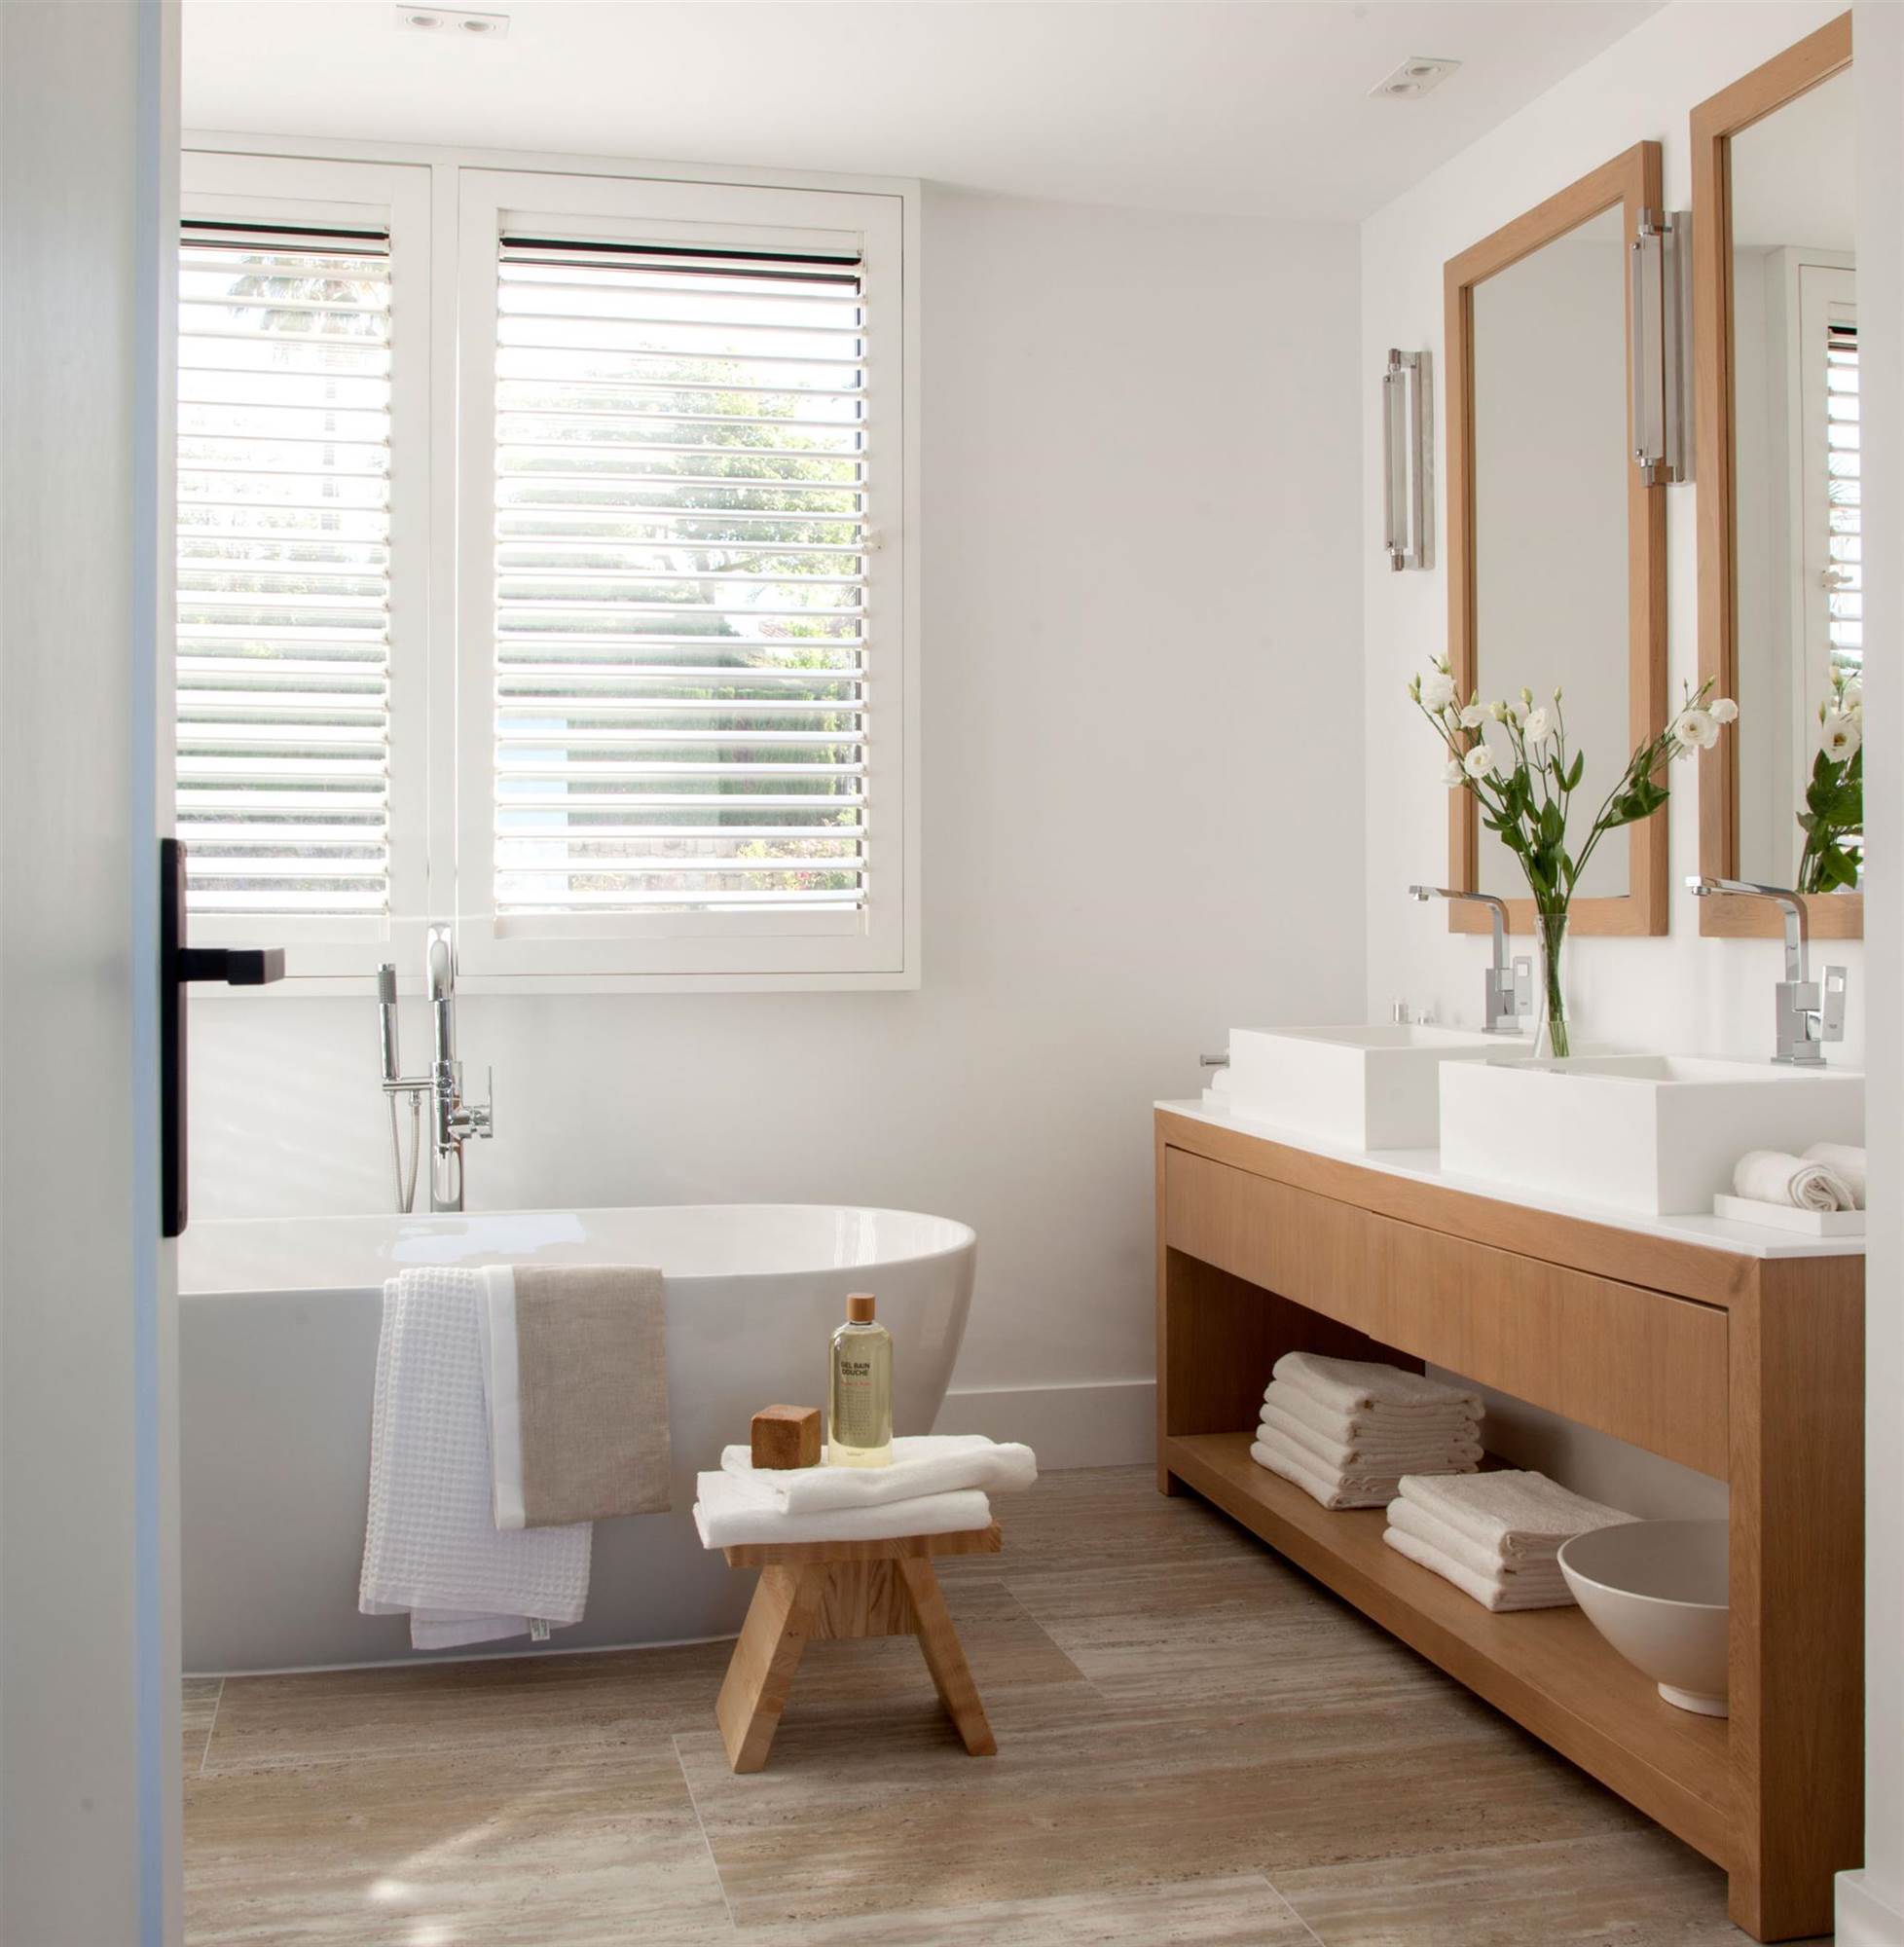 Baño moderno con mueble y espejo con marco de madera.